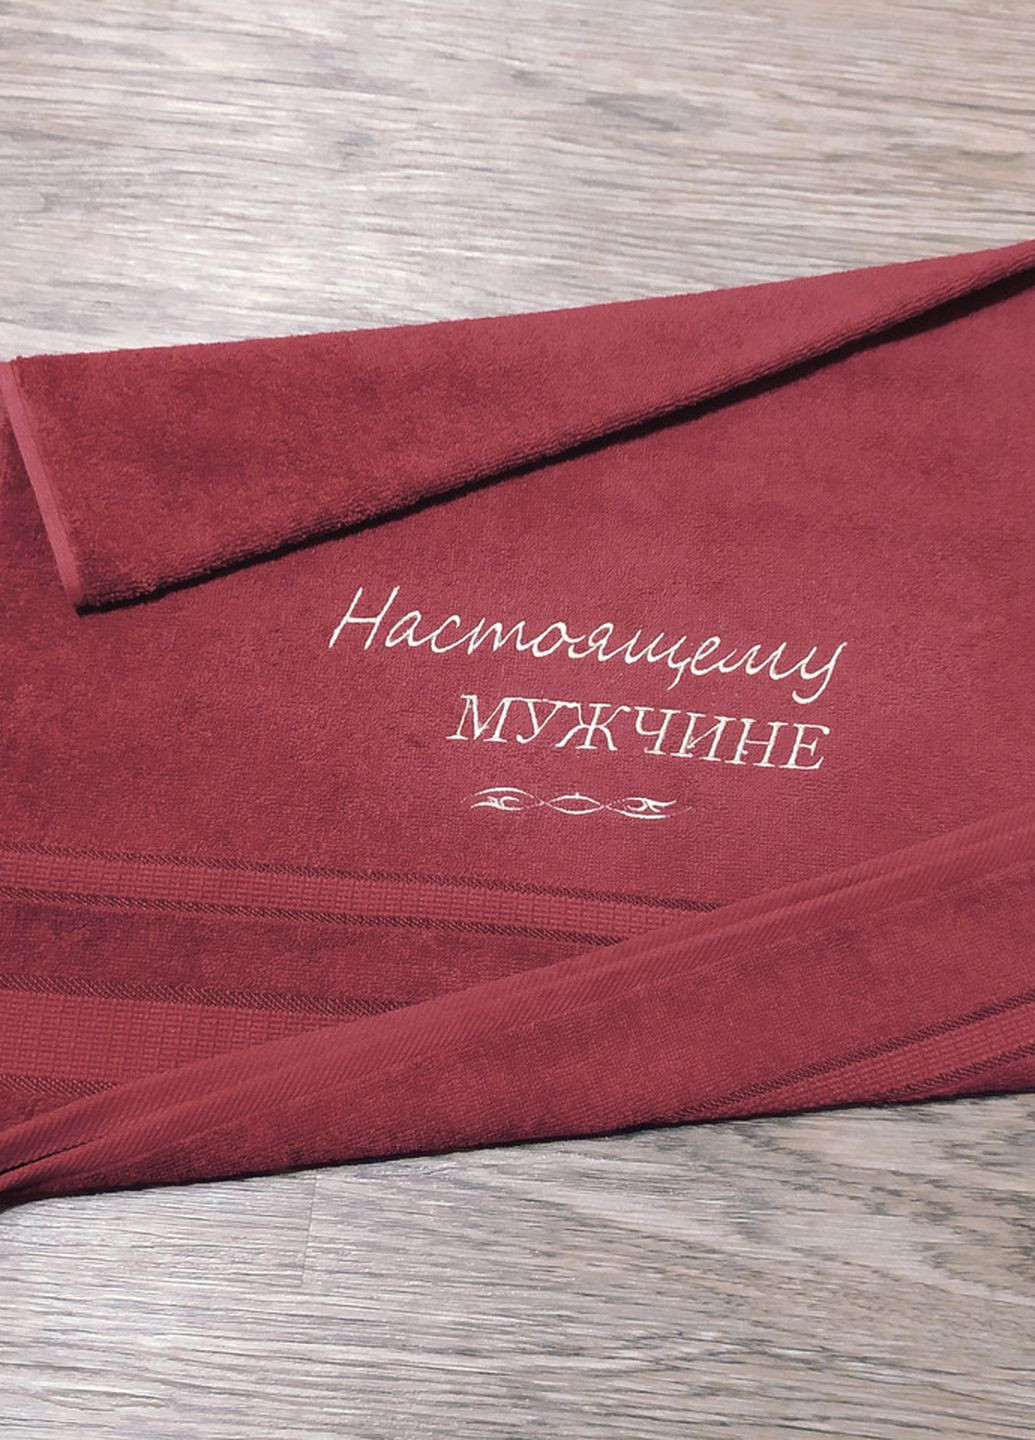 No Brand полотенце c вышивкой махровое лицевое 50*90 бордовый настоящему мужчине 00034 однотонный бордовый производство - Украина